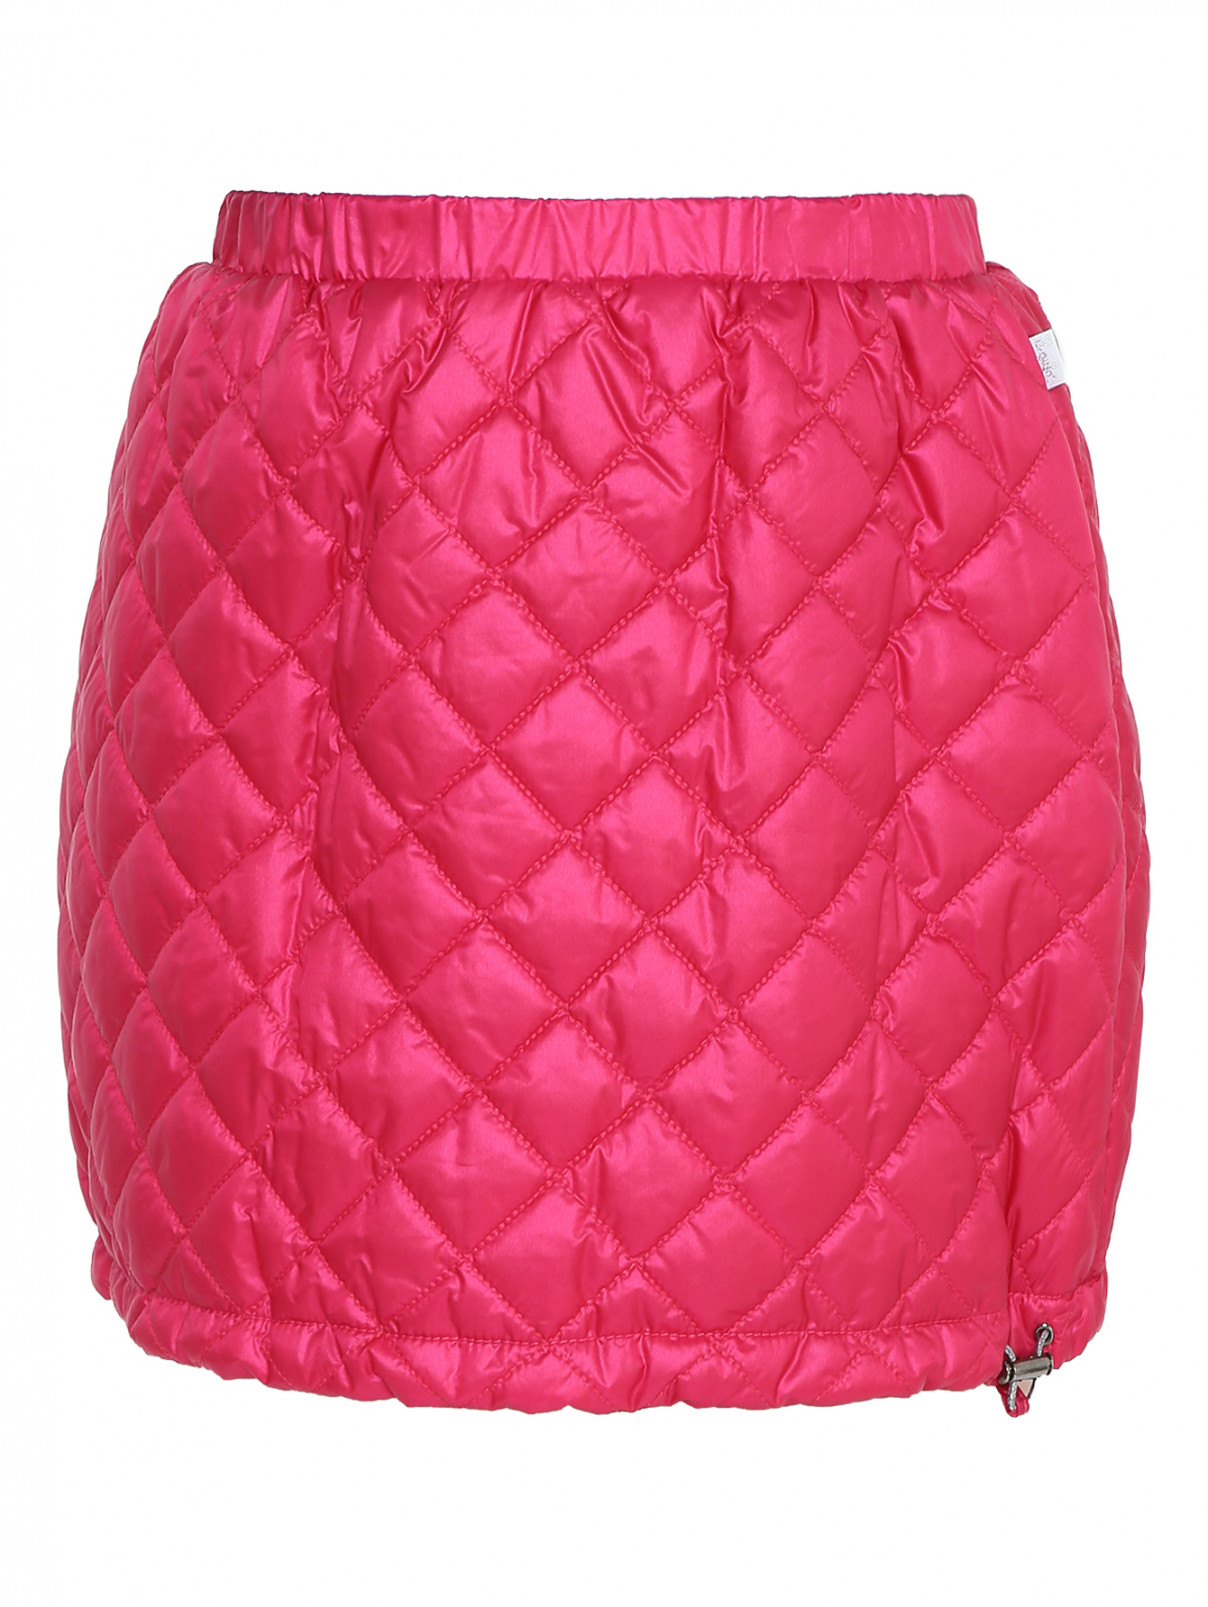 Стеганая юбка на резинке Il Gufo  –  Общий вид  – Цвет:  Розовый